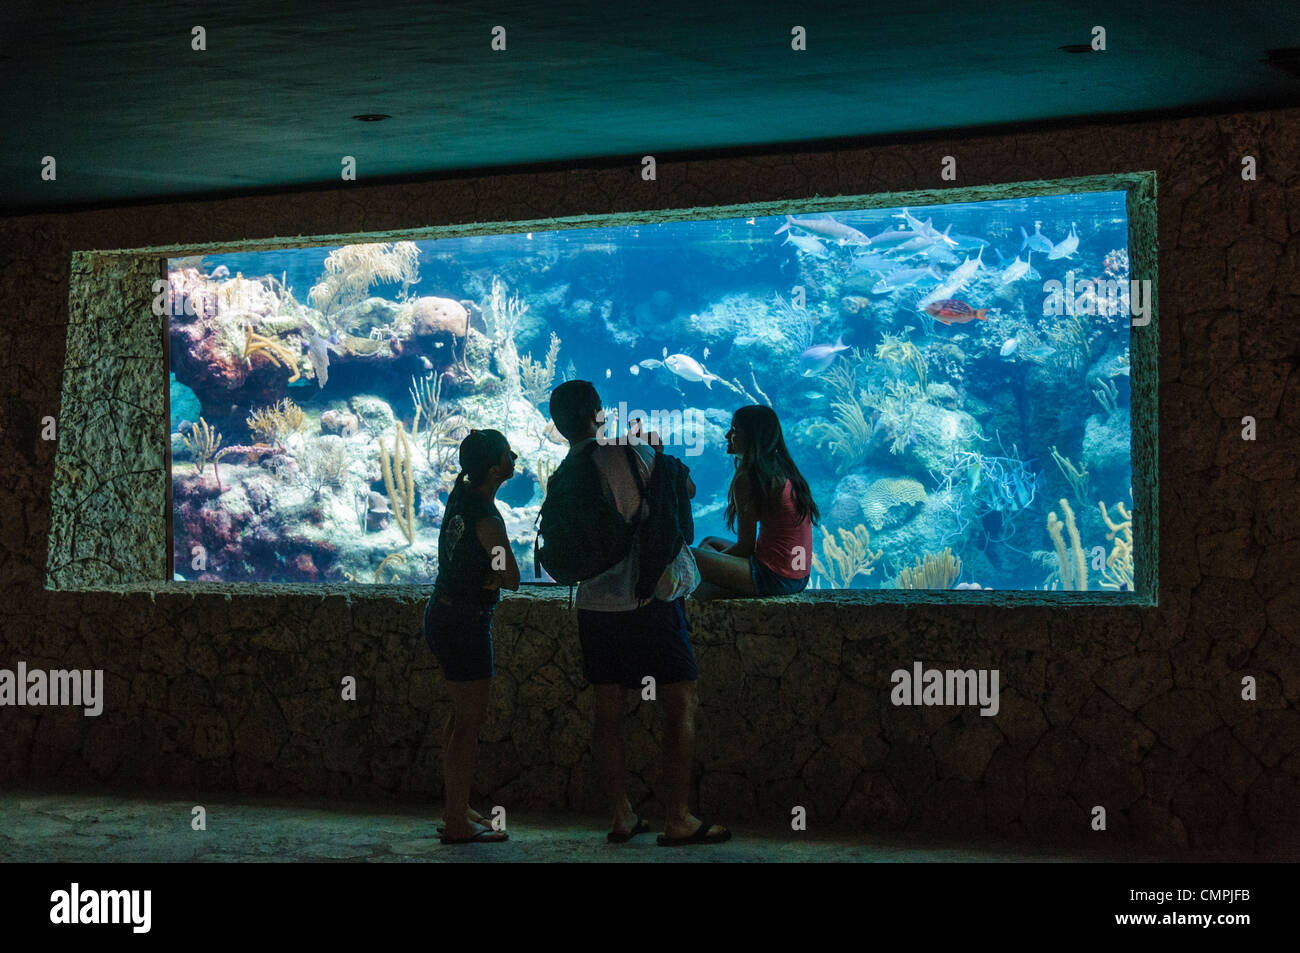 Drei Besucher Looke durch Unterwasser-Aquarium zeigt einige der Unterwasserwelt und Korallenriffe im Xcarat Maya Themenpark südlich von Cancun und Playa del Carmen auf der mexikanischen Halbinsel Yucatana. Stockfoto